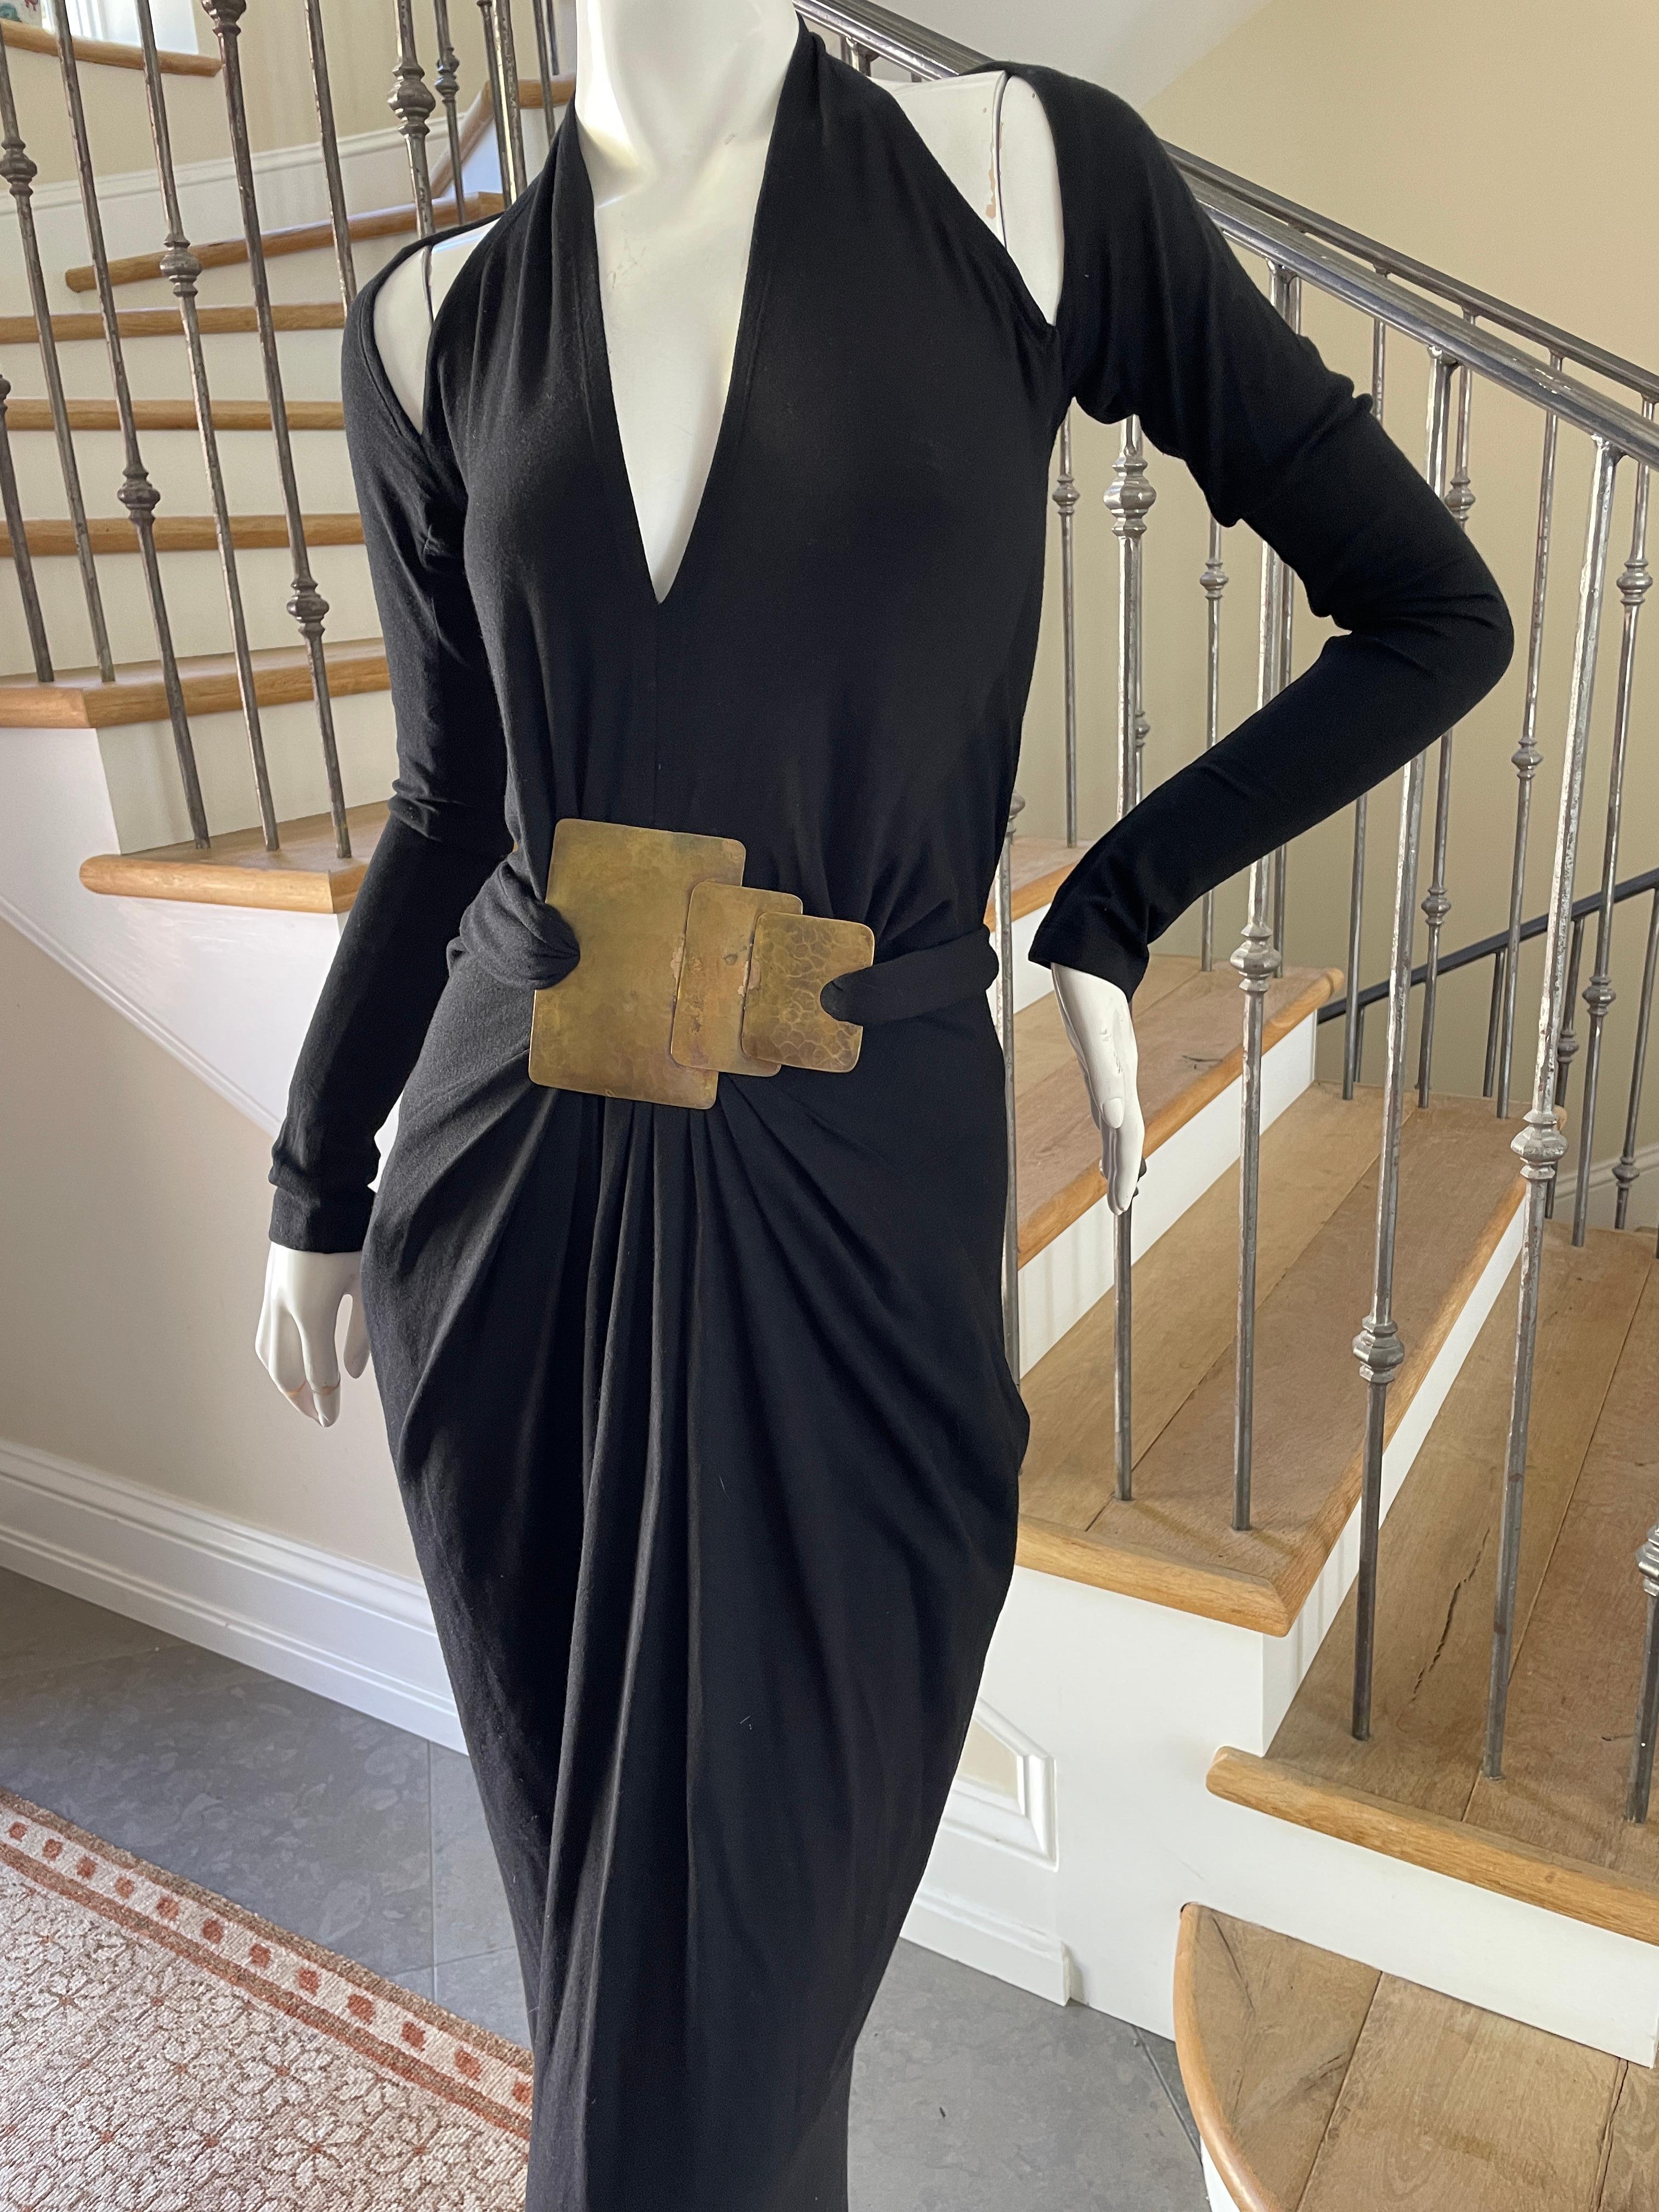 Donna Karan Cold Shoulder Evening Dress with Robert Lee Morris Belt Ornament 4